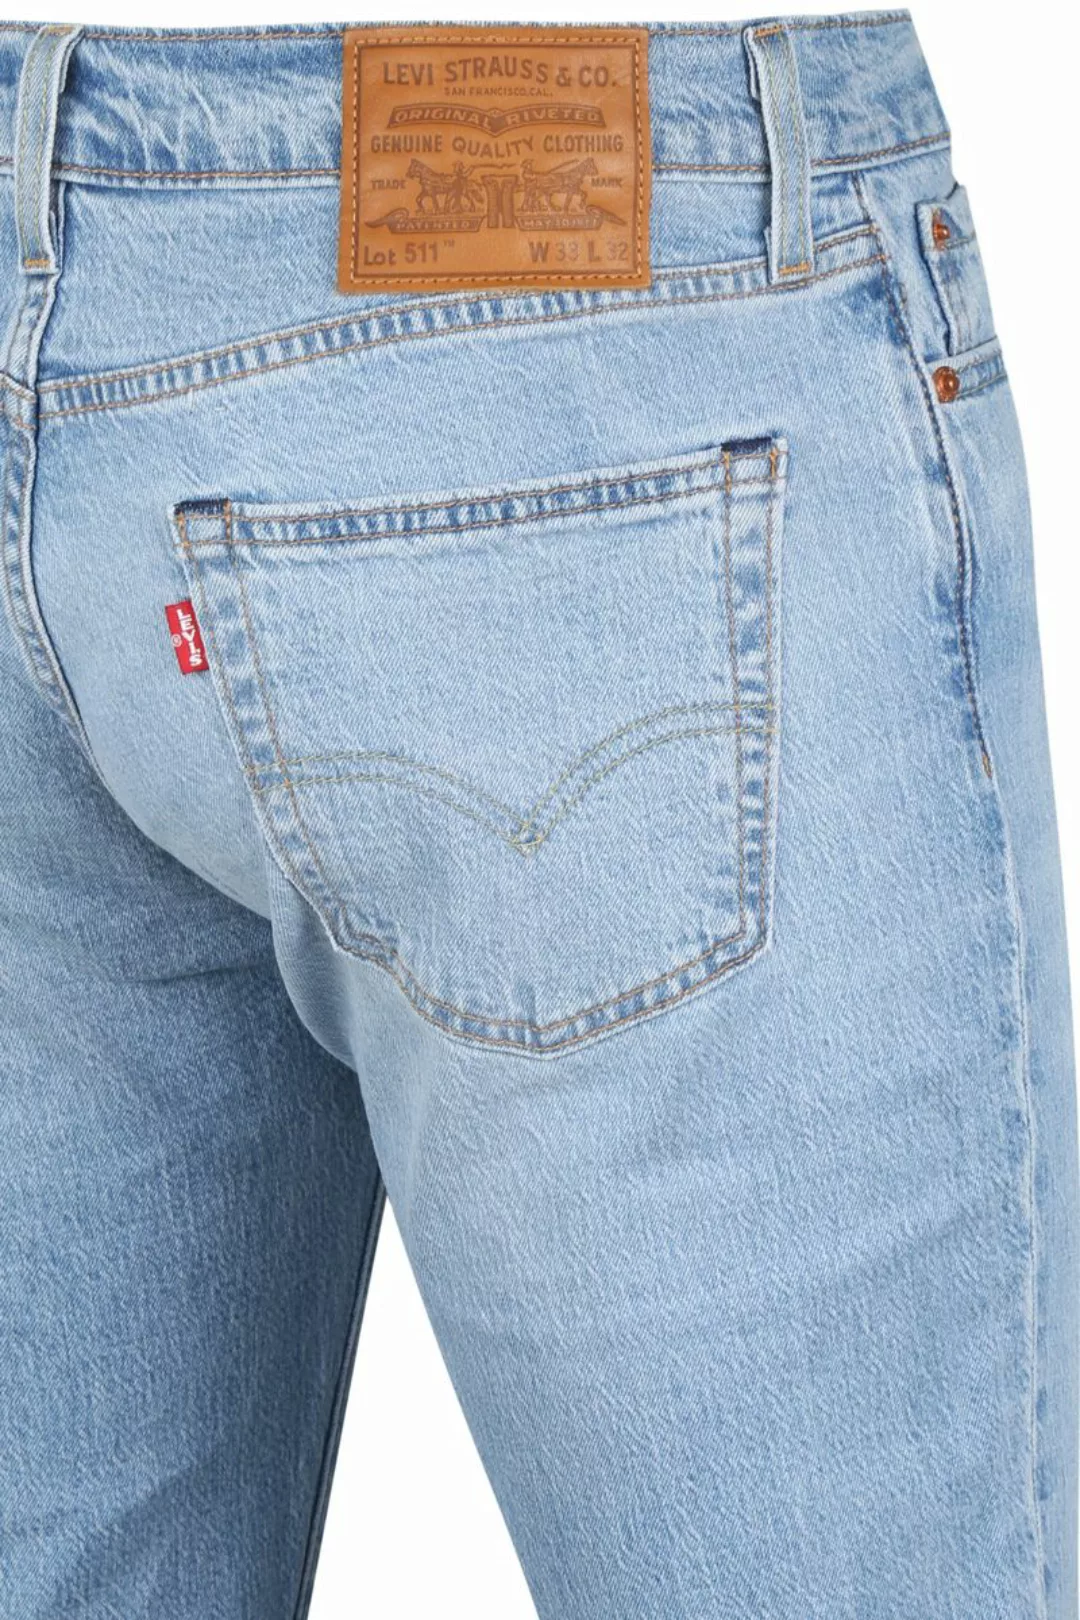 Levi's 511 Jeanshose Blau - Größe W 32 - L 32 günstig online kaufen